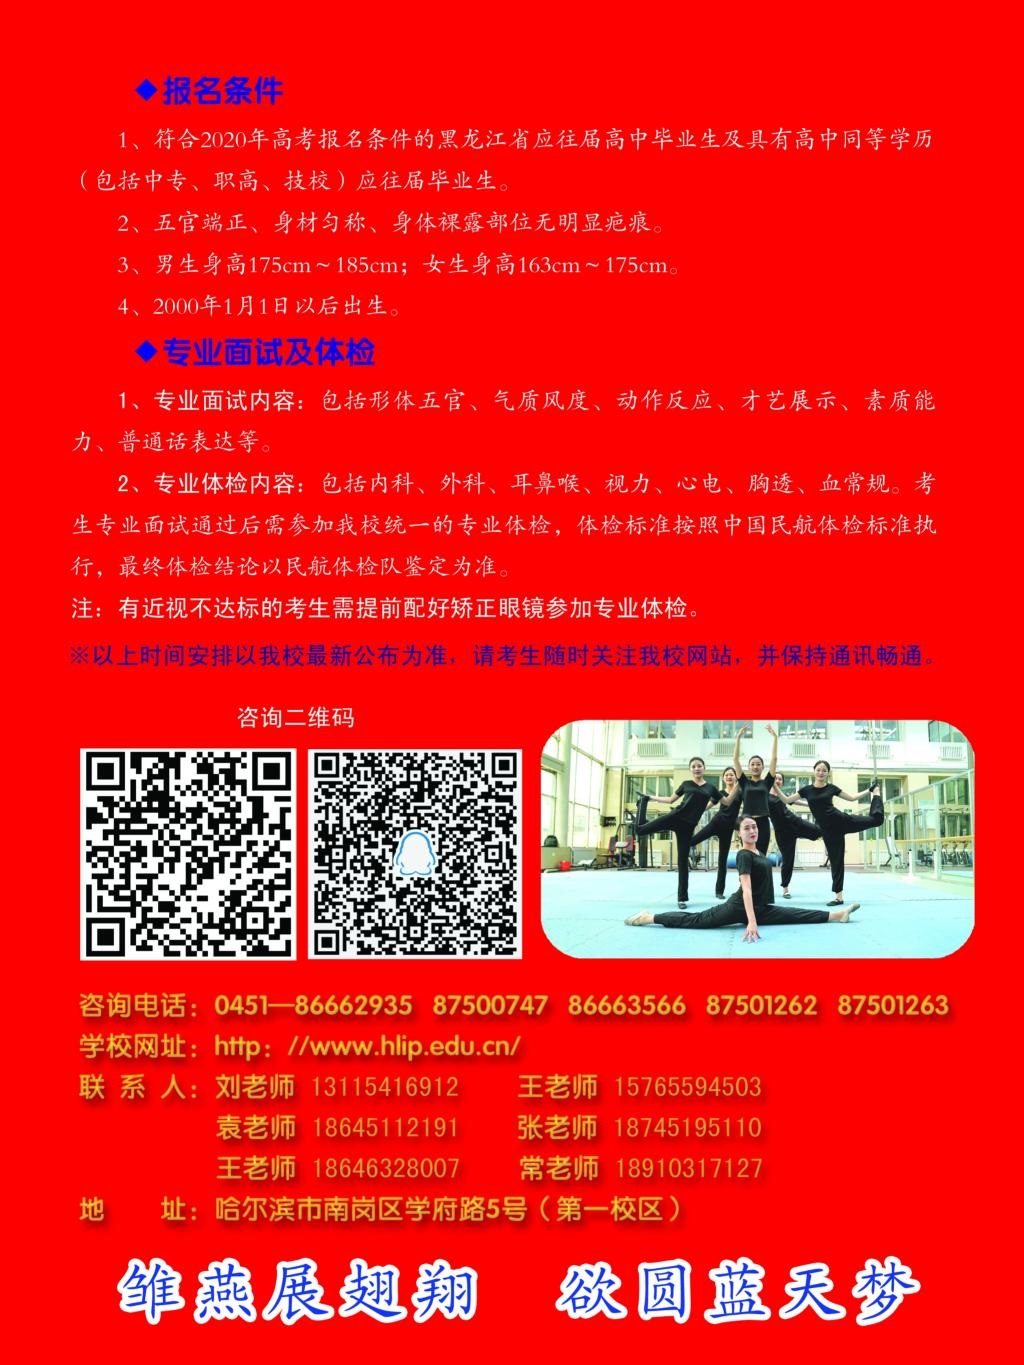 黑龙江职业学院空中乘务专业2020年单独招生简章